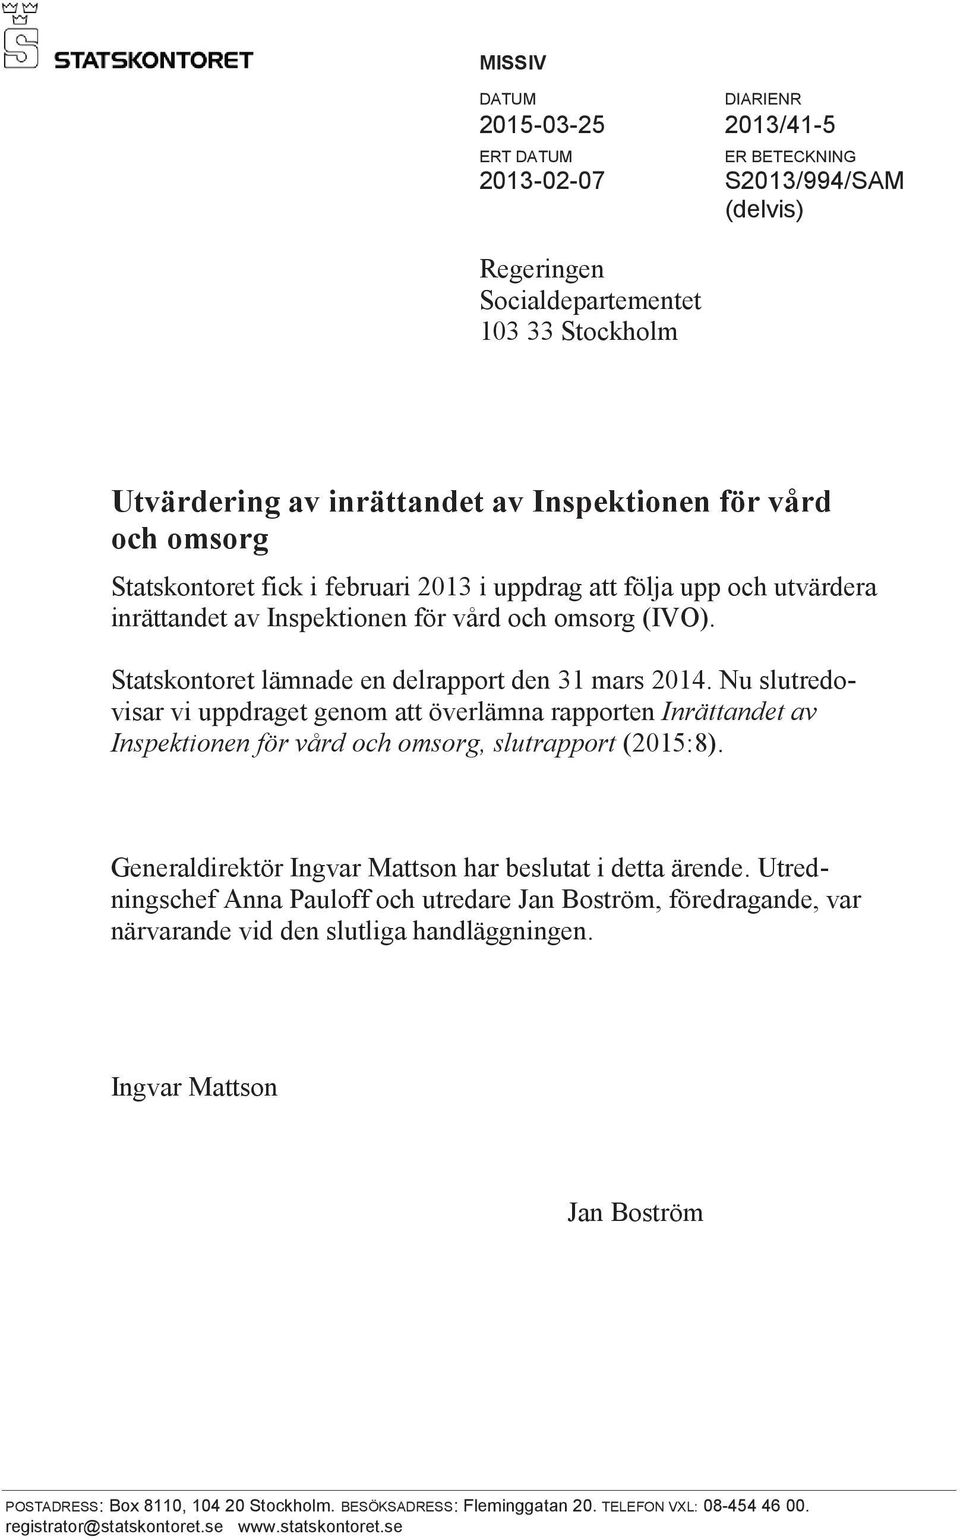 Nu slutredovisar vi uppdraget genom att överlämna rapporten Inrättandet av Inspektionen för vård och omsorg, slutrapport (2015:8). Generaldirektör Ingvar Mattson har beslutat i detta ärende.